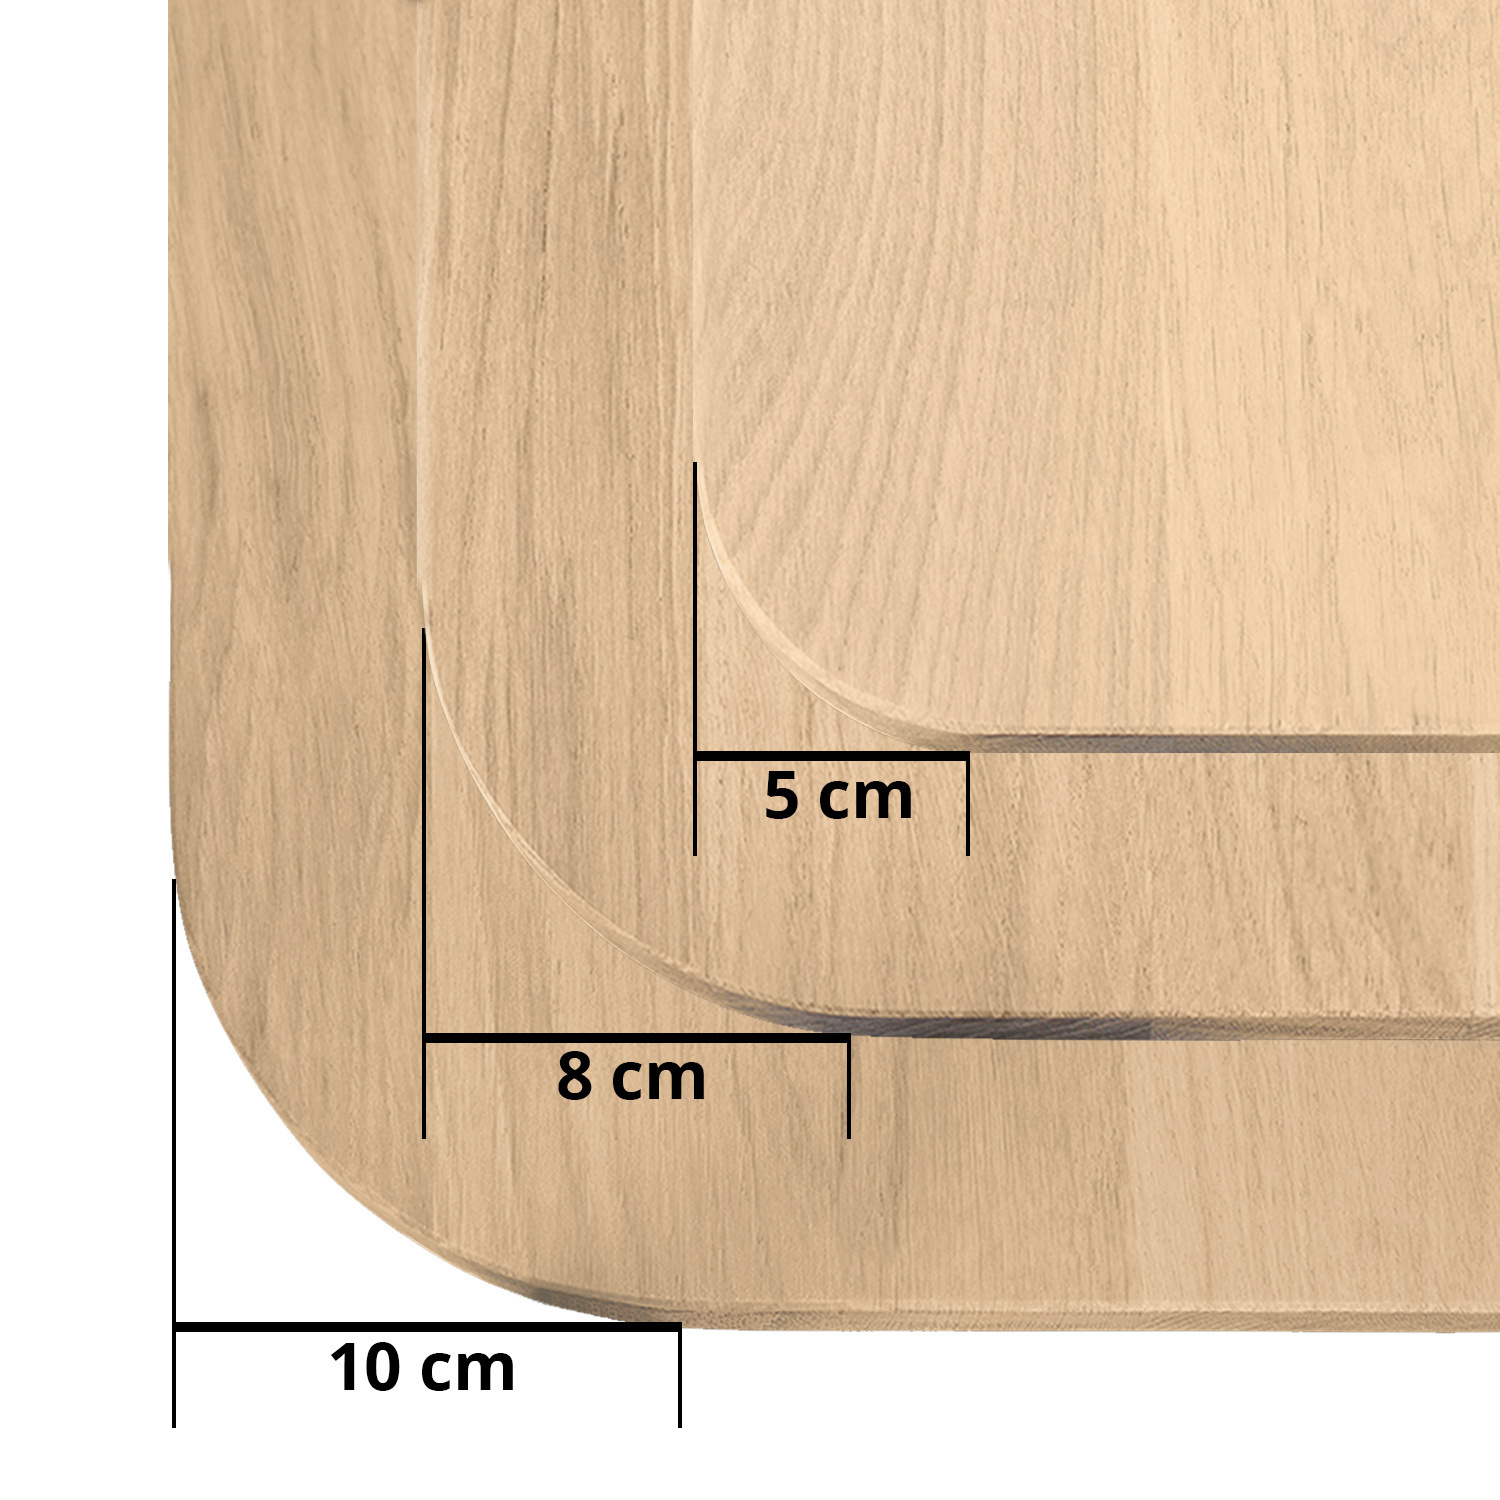  Tischplatte Wildeiche - mit runden Ecken - 2,5 cm dick (1-Schicht) - XXL Lamellen (14-20 cm breit) - Asteiche (rustikal) - verleimt & künstlich getrocknet (HF 8-12%) - mit abgerundeten Kanten - verschiedene Größen